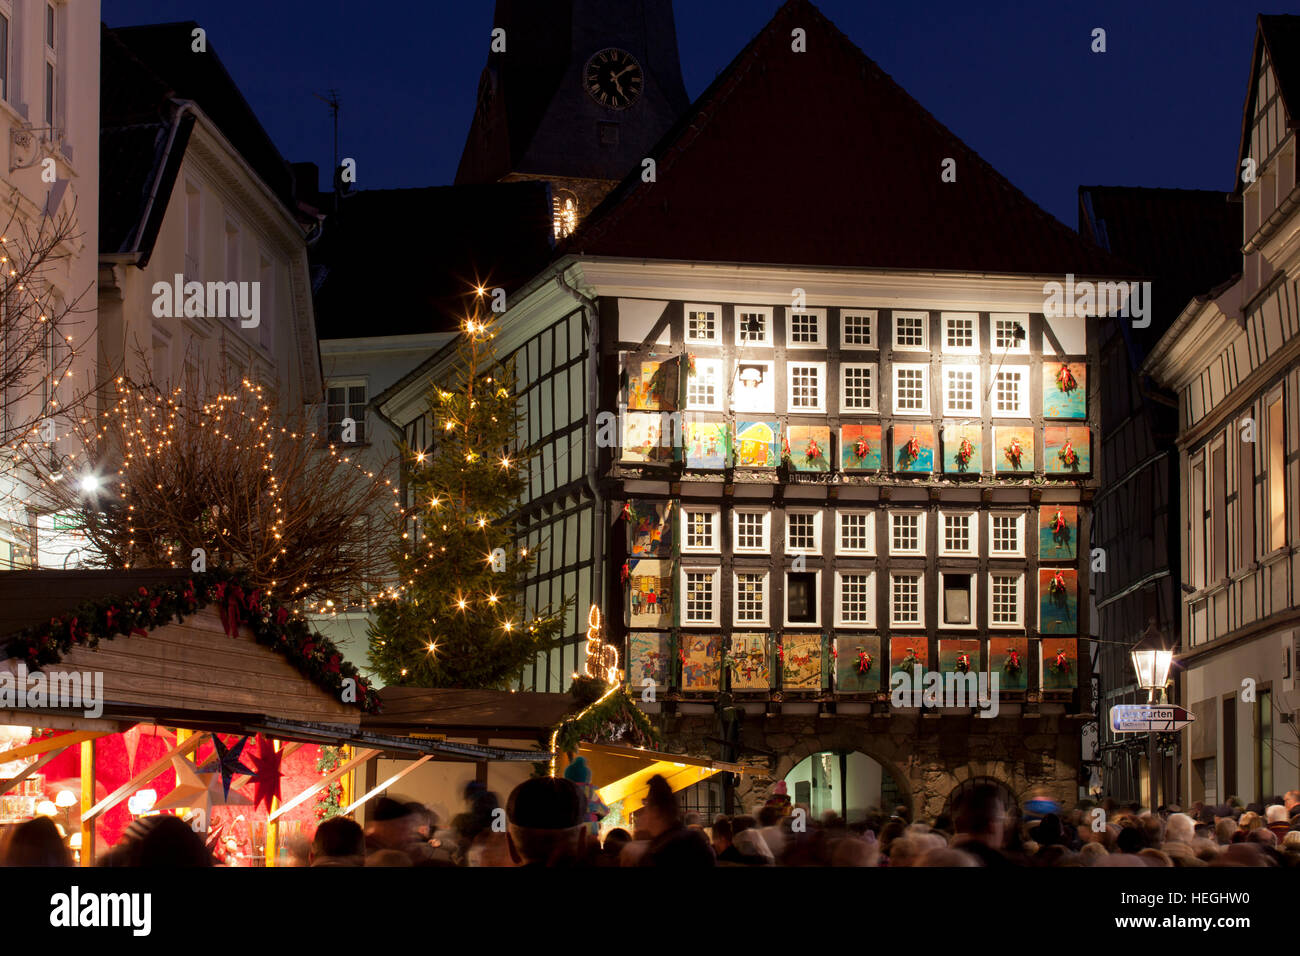 Deutschland, Hattingen, vom 1 Dezember 24 Fenster des alten Rathauses sind als einen riesigen Adventskalender dekoriert. Stockfoto